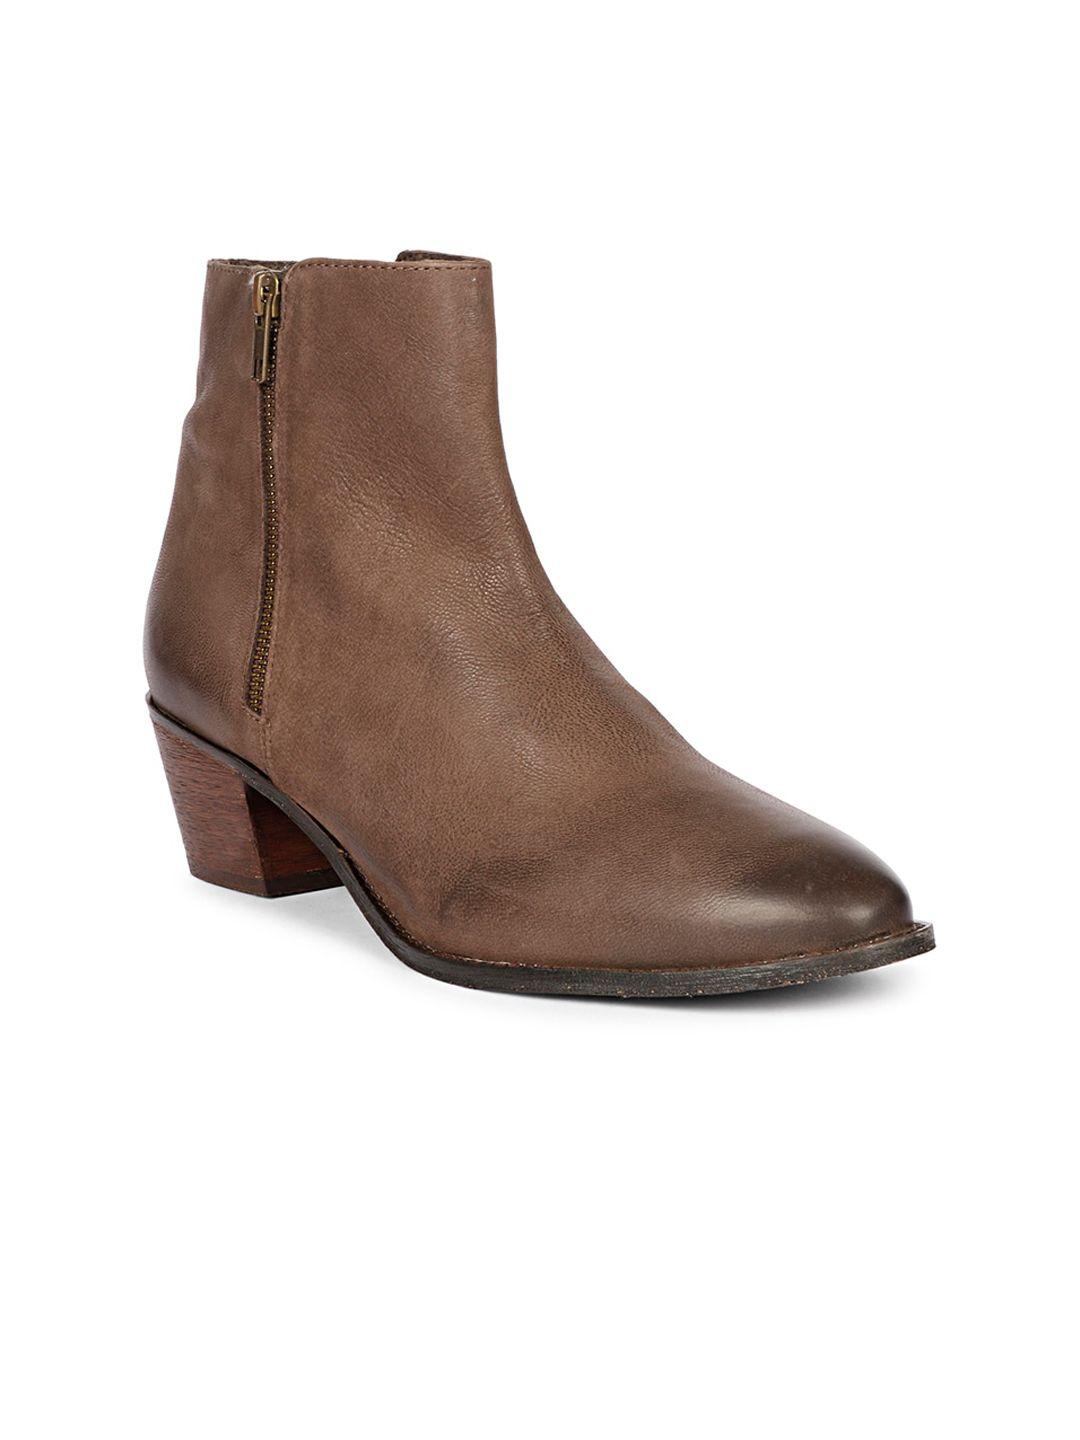 saint-g-women-mid-top-genuine-leather-block-heel-regular-boots